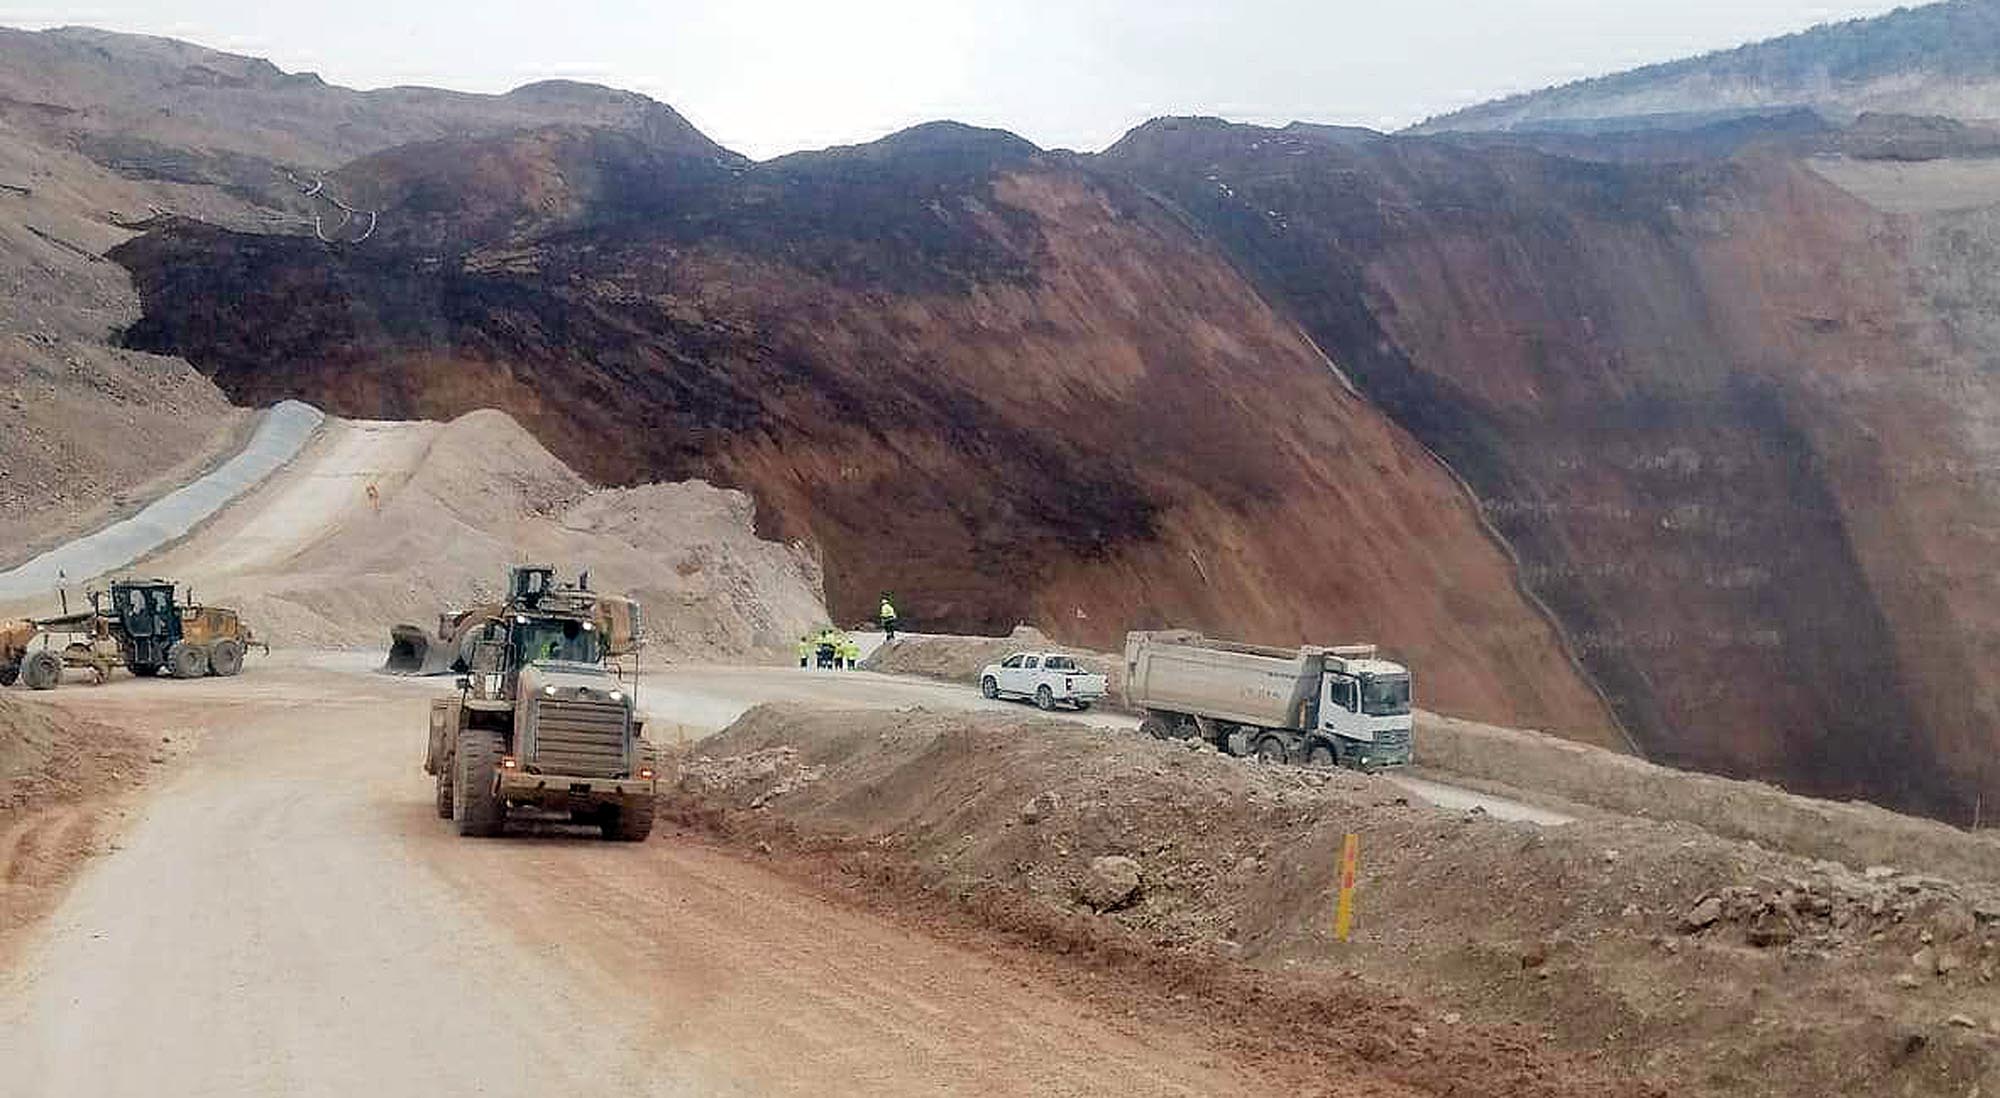 Son Dakika: Erzincan'da altın madeninde bir facia meydana geldi!